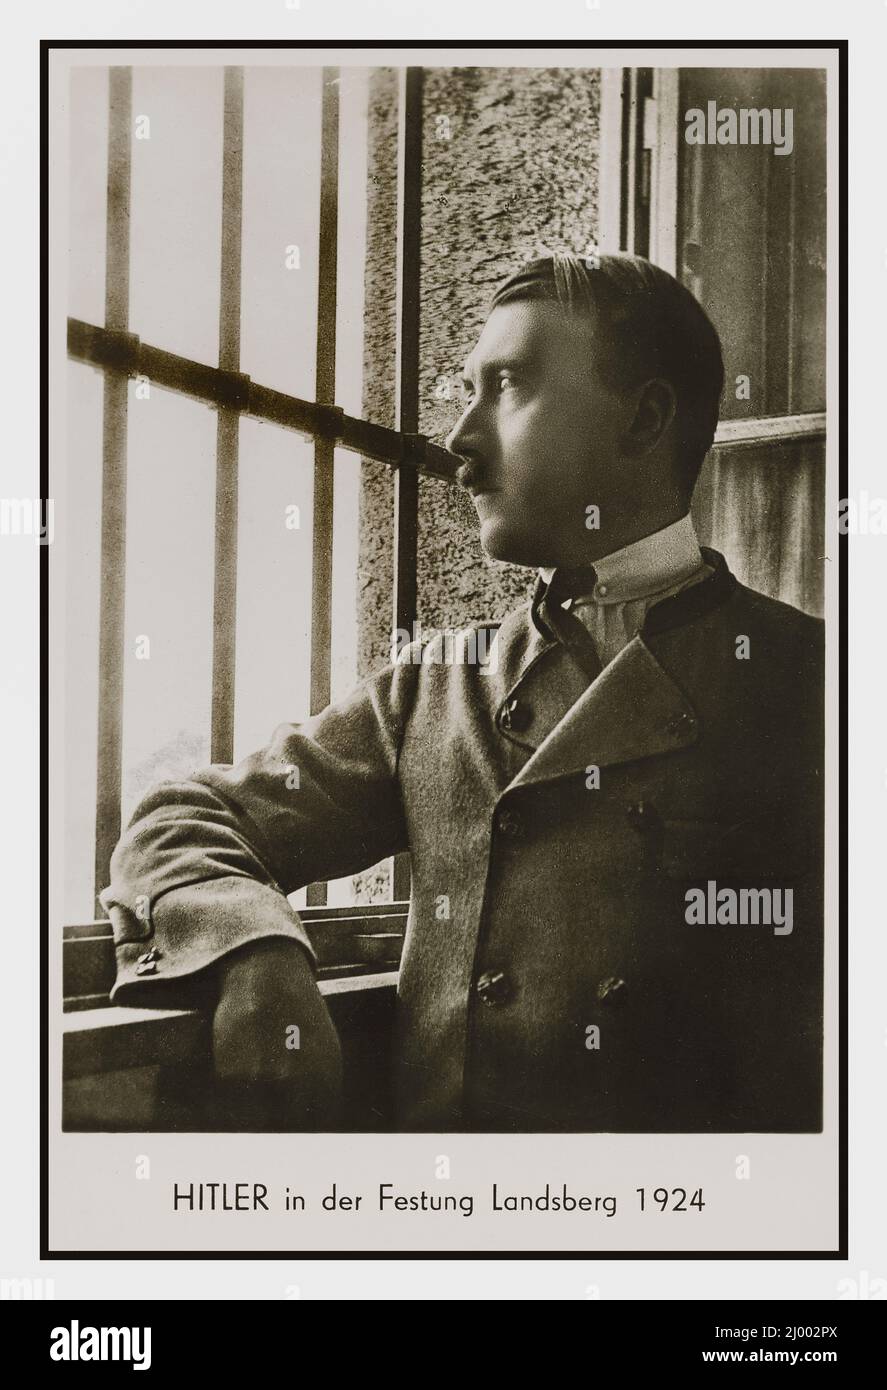 Adolf Hitler nella prigione di Landsberg nel 1924 è meglio conosciuta come la prigione dove Adolf Hitler fu detenuto, dopo il fallimento della Beer Hall Putsch a Monaco, e dove dettò le sue memorie Mein Kampf a Rudolf Hess Foto Stock